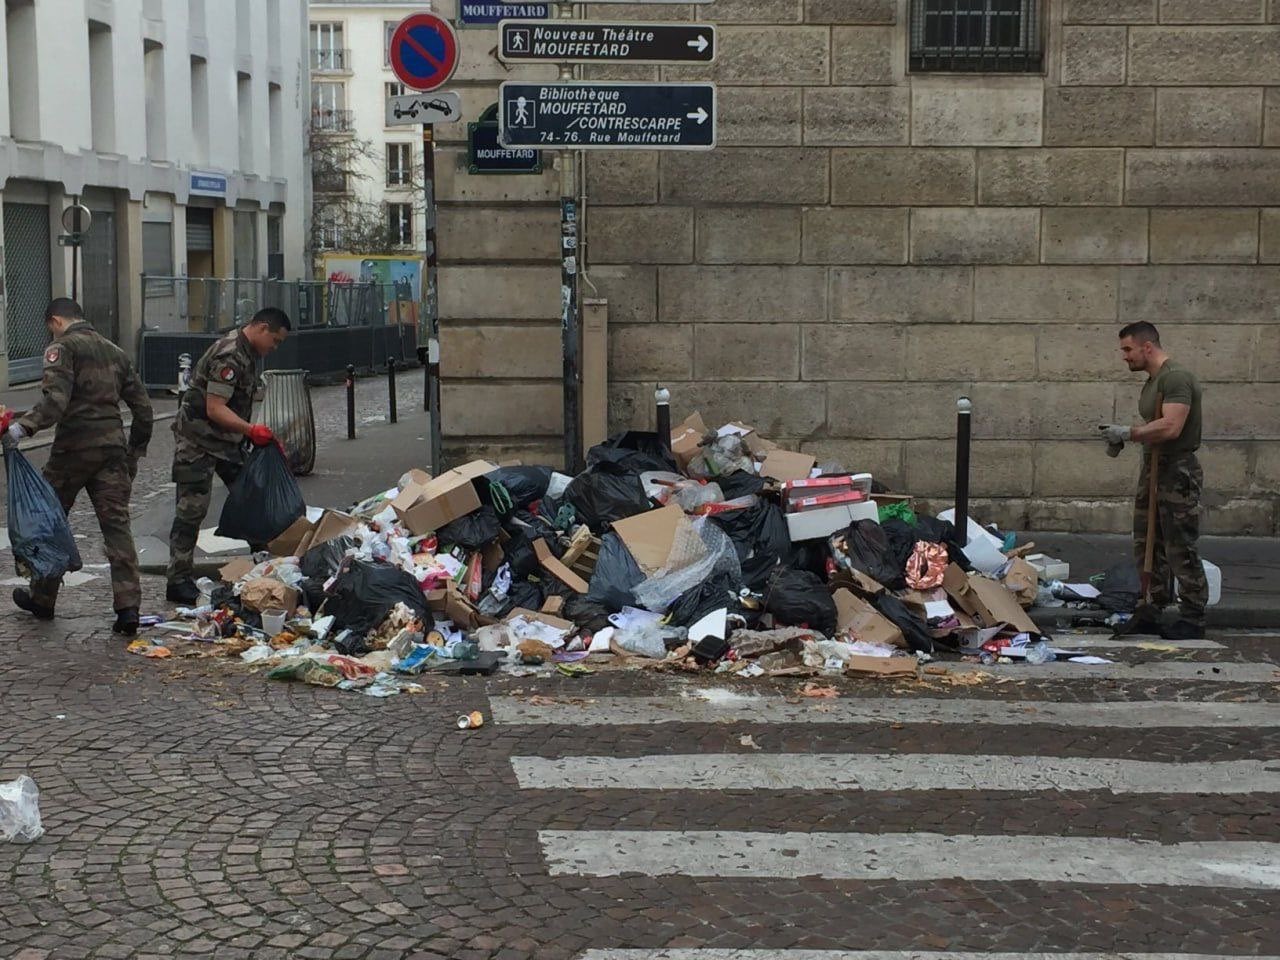 Coletores de lixo na França fazem greve enquanto país se prepara para receber tocha olímpica